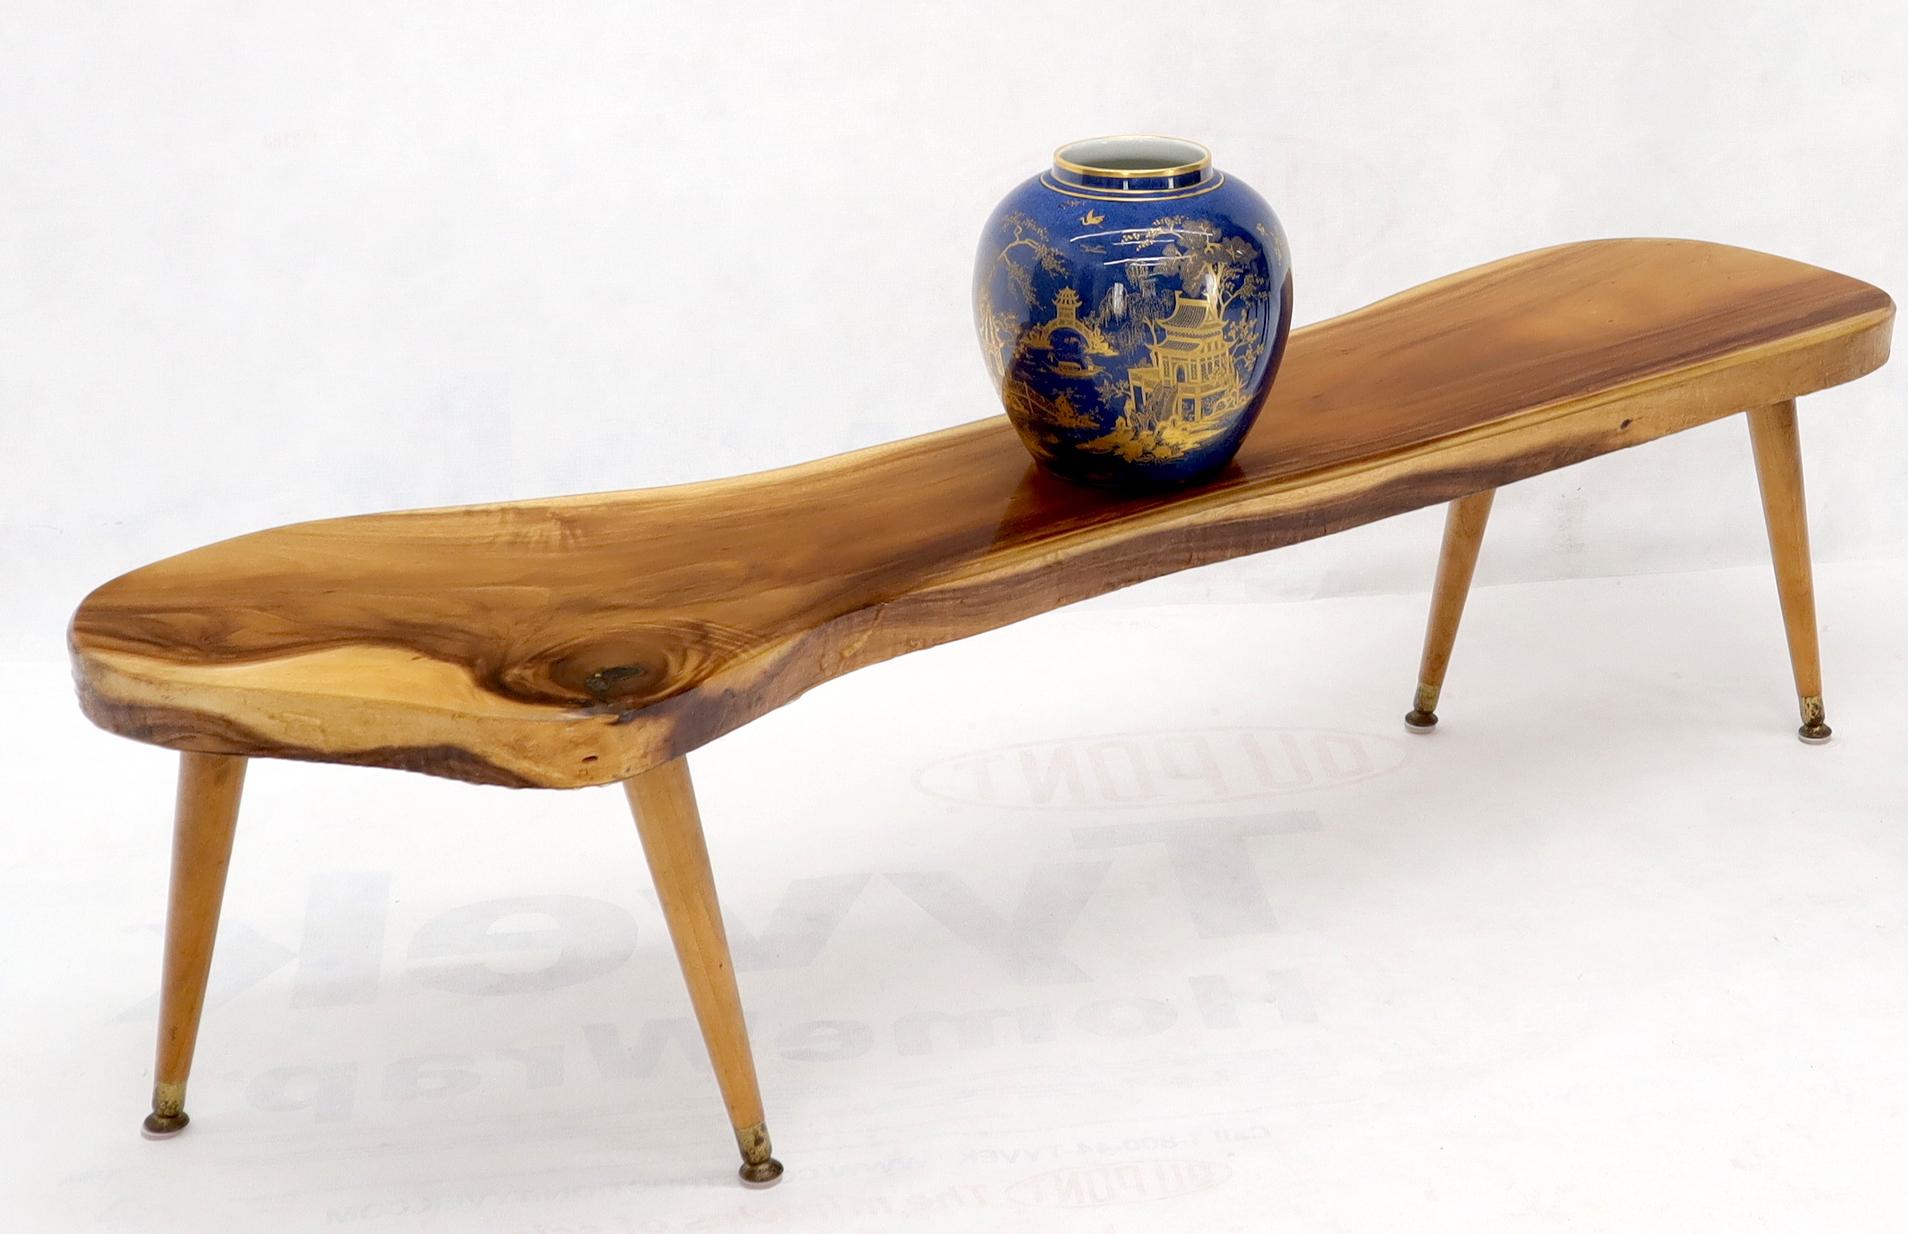 Table basse de forme organique en fil de bois, de style moderne du milieu du siècle. Forme allongée et arrondie. Le bois semble être du noyer.